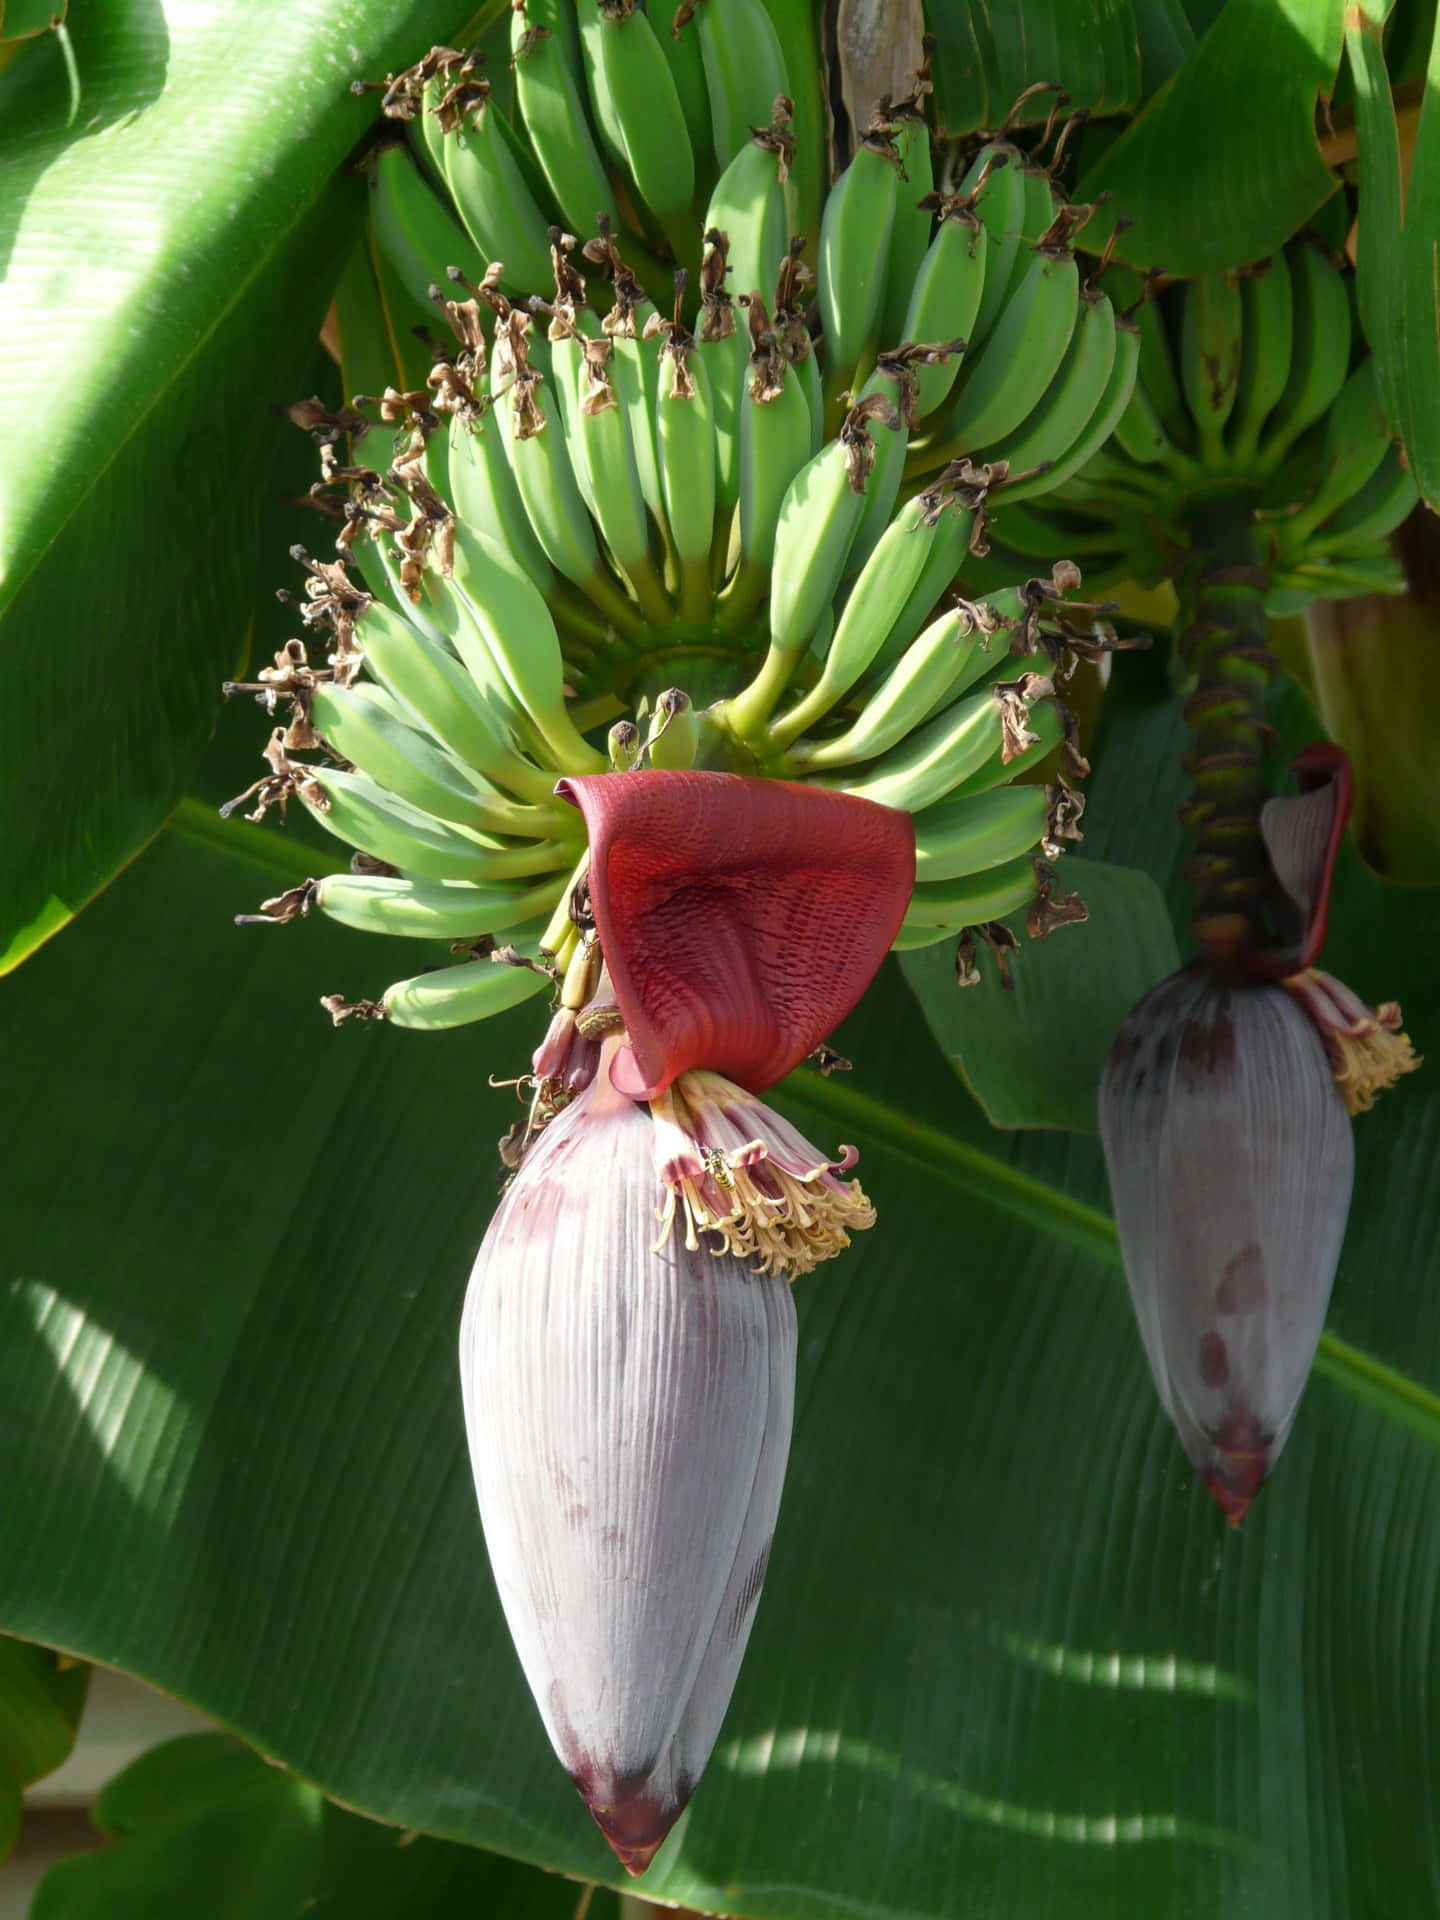 Lasexuberantes Y Verdes Hojas De Un Árbol De Plátano Son Un Símbolo Tropical De Abundancia.